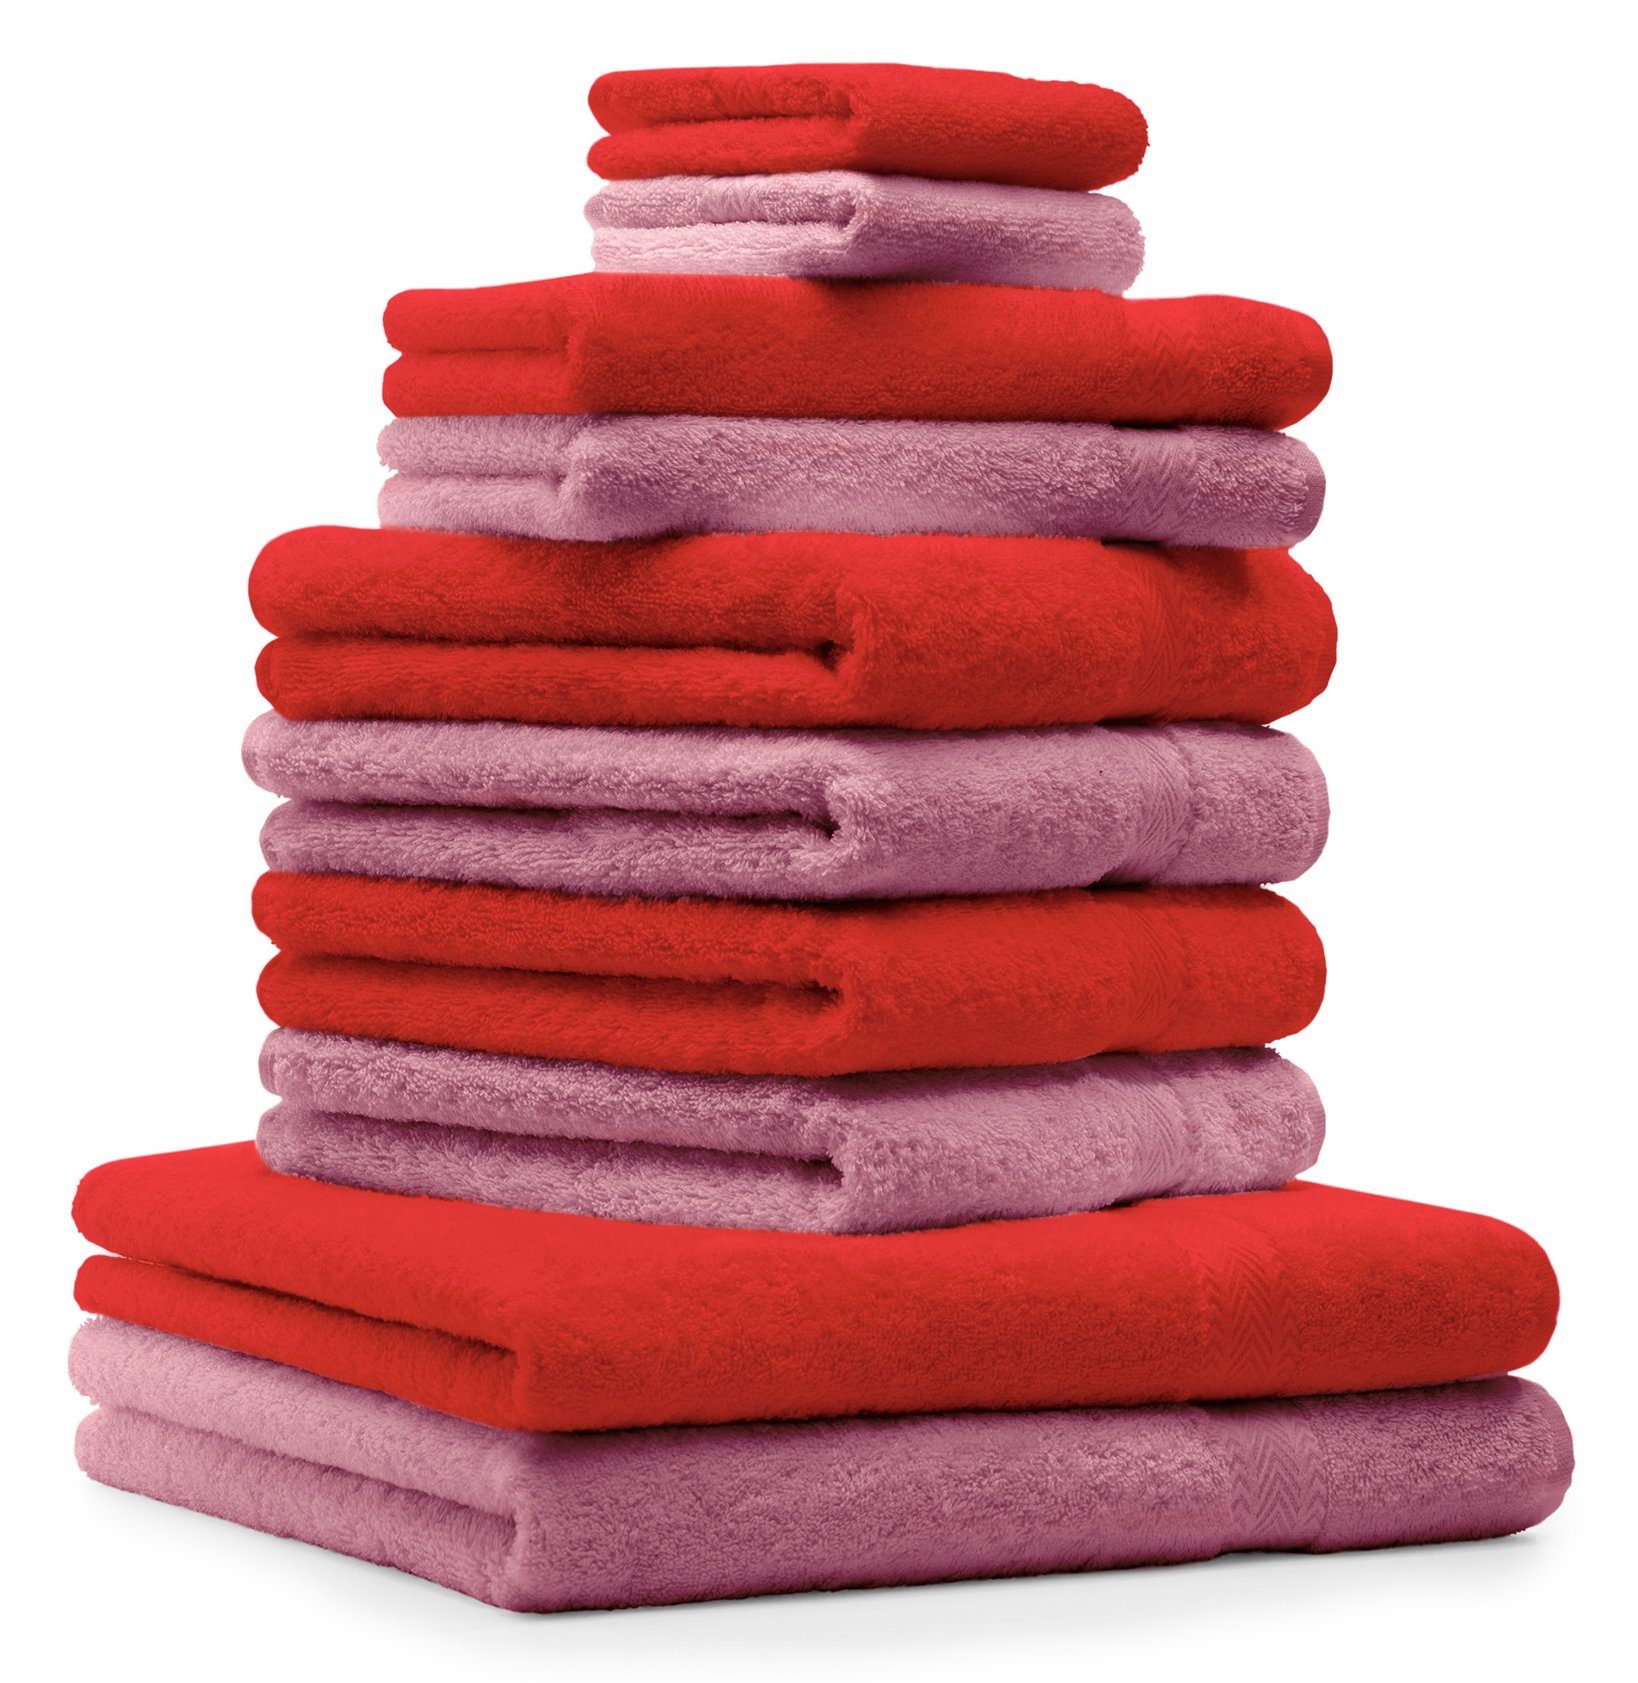 Betz Handtuch Set 10 tlg. Handtuch-Set CLASSIC Farbe rot und altrosa, 100% Baumwolle